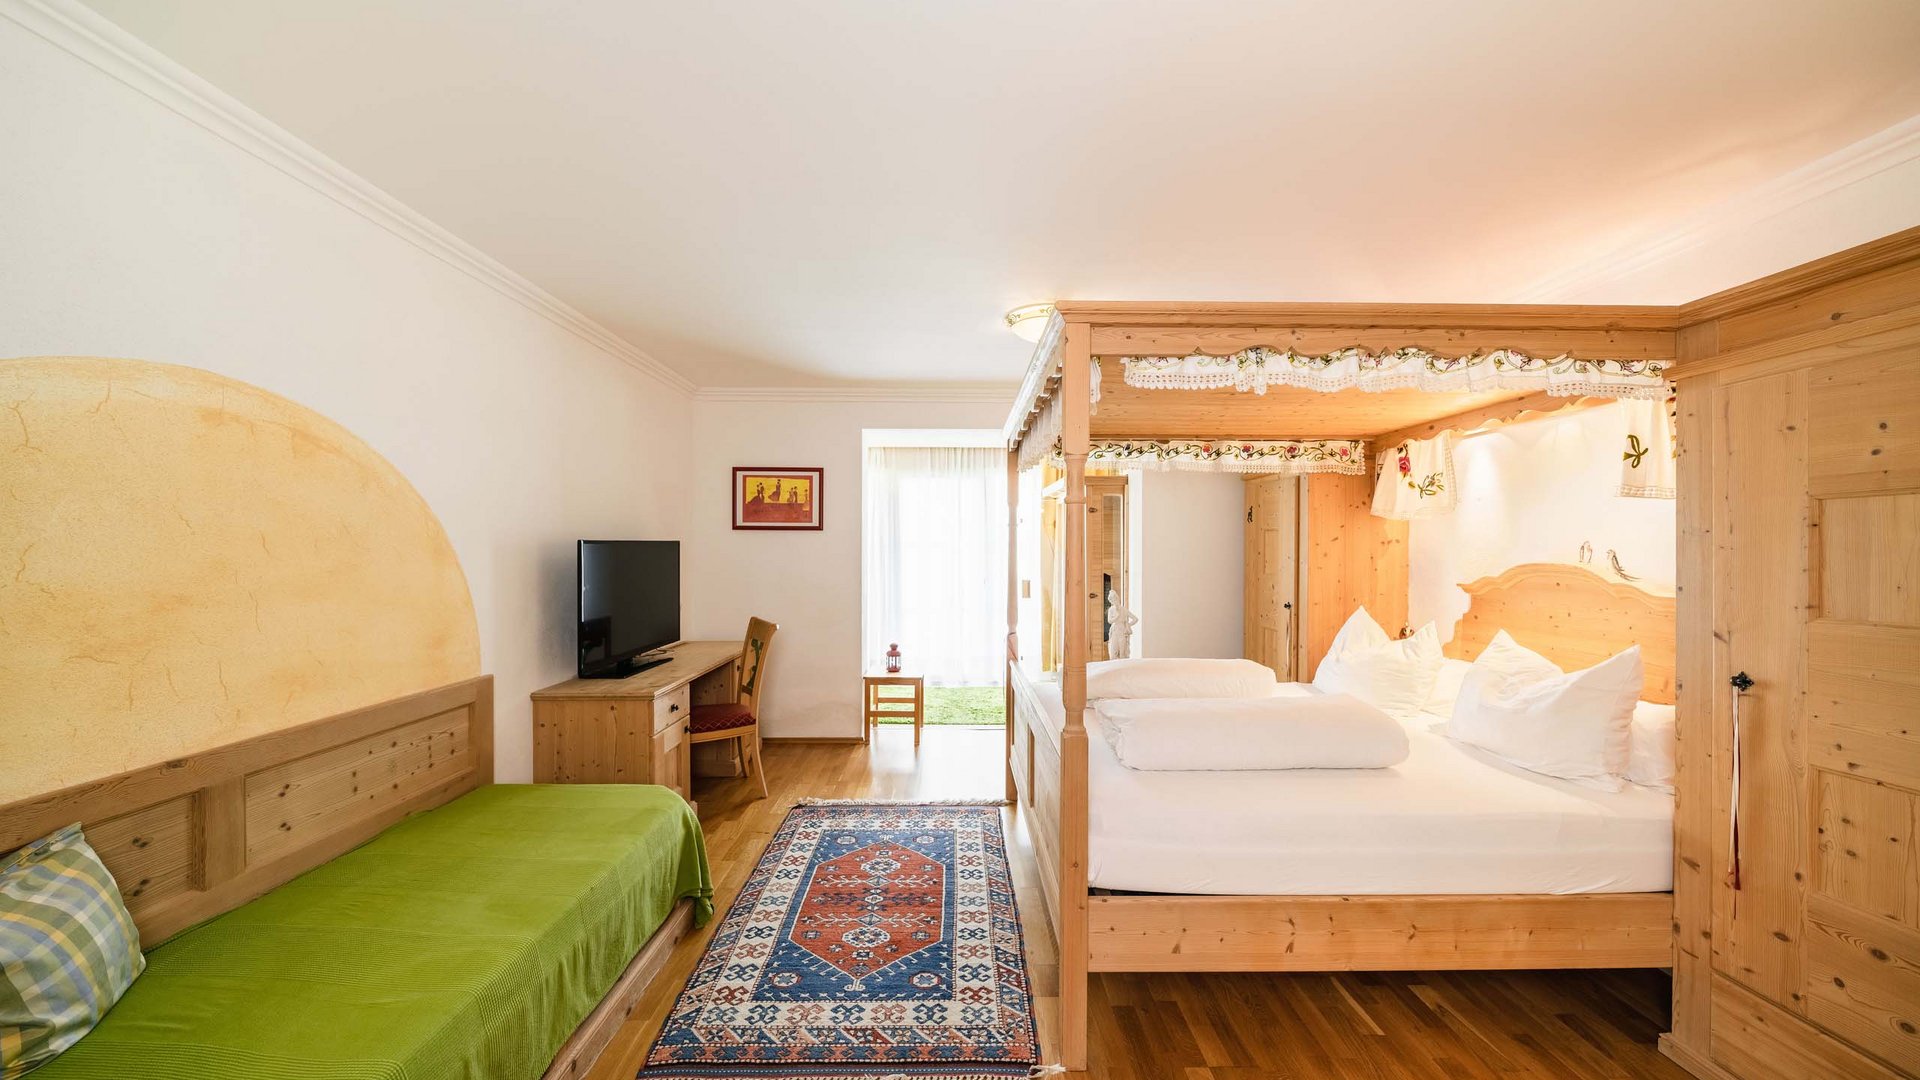 Euer Bio-Hotel in Tirol mit gemütlichen Zimmern